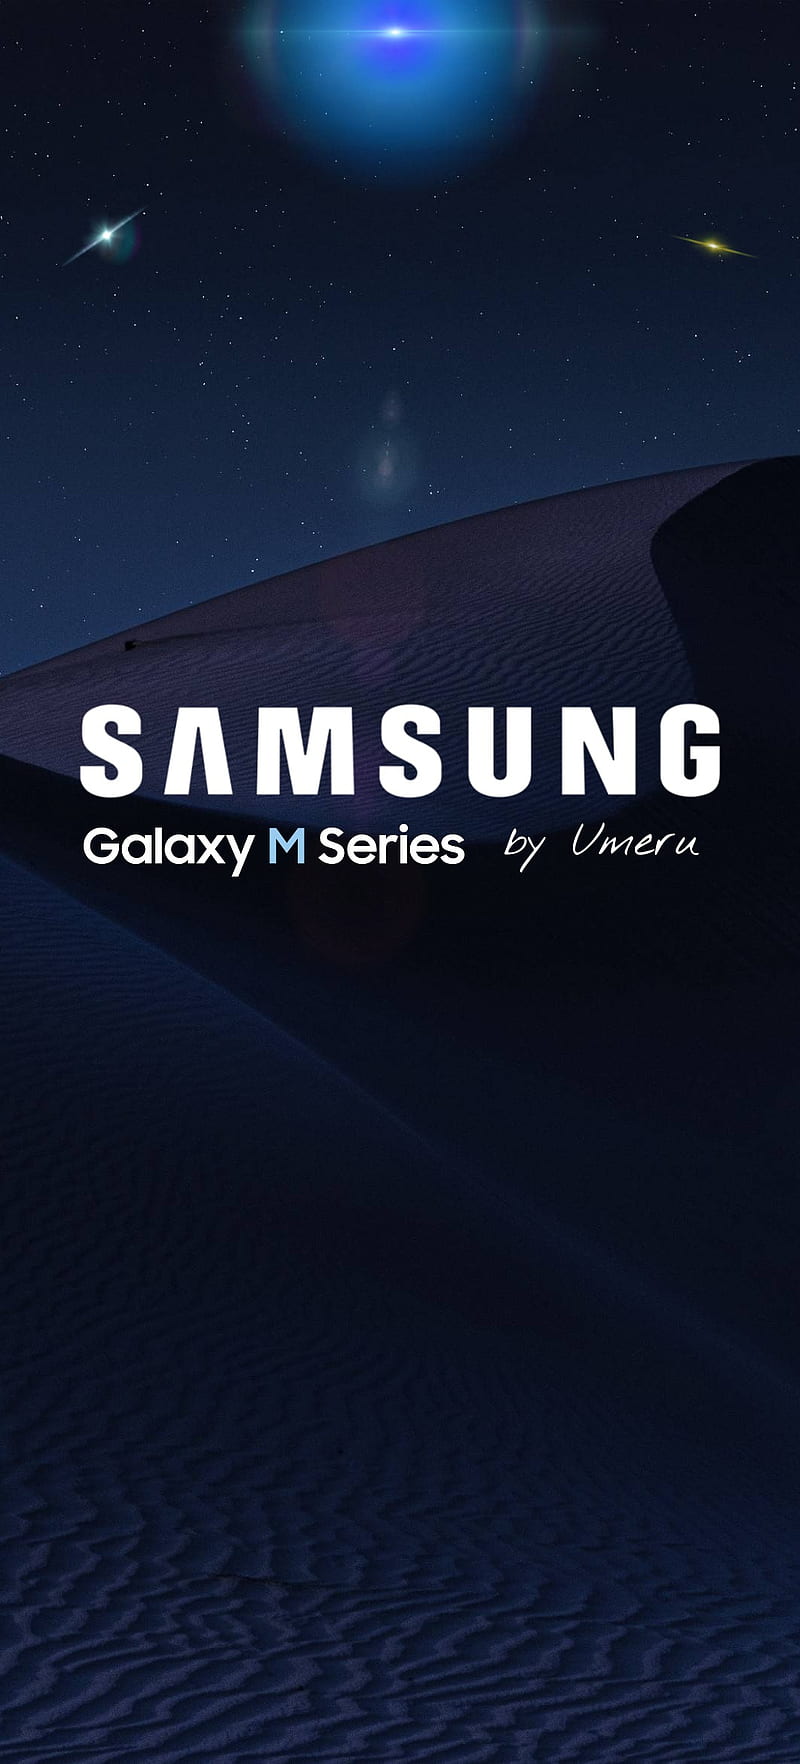 Mời tải về hình nền của Galaxy M10 và M20 sắp ra mắt của Samsung   Fptshopcomvn